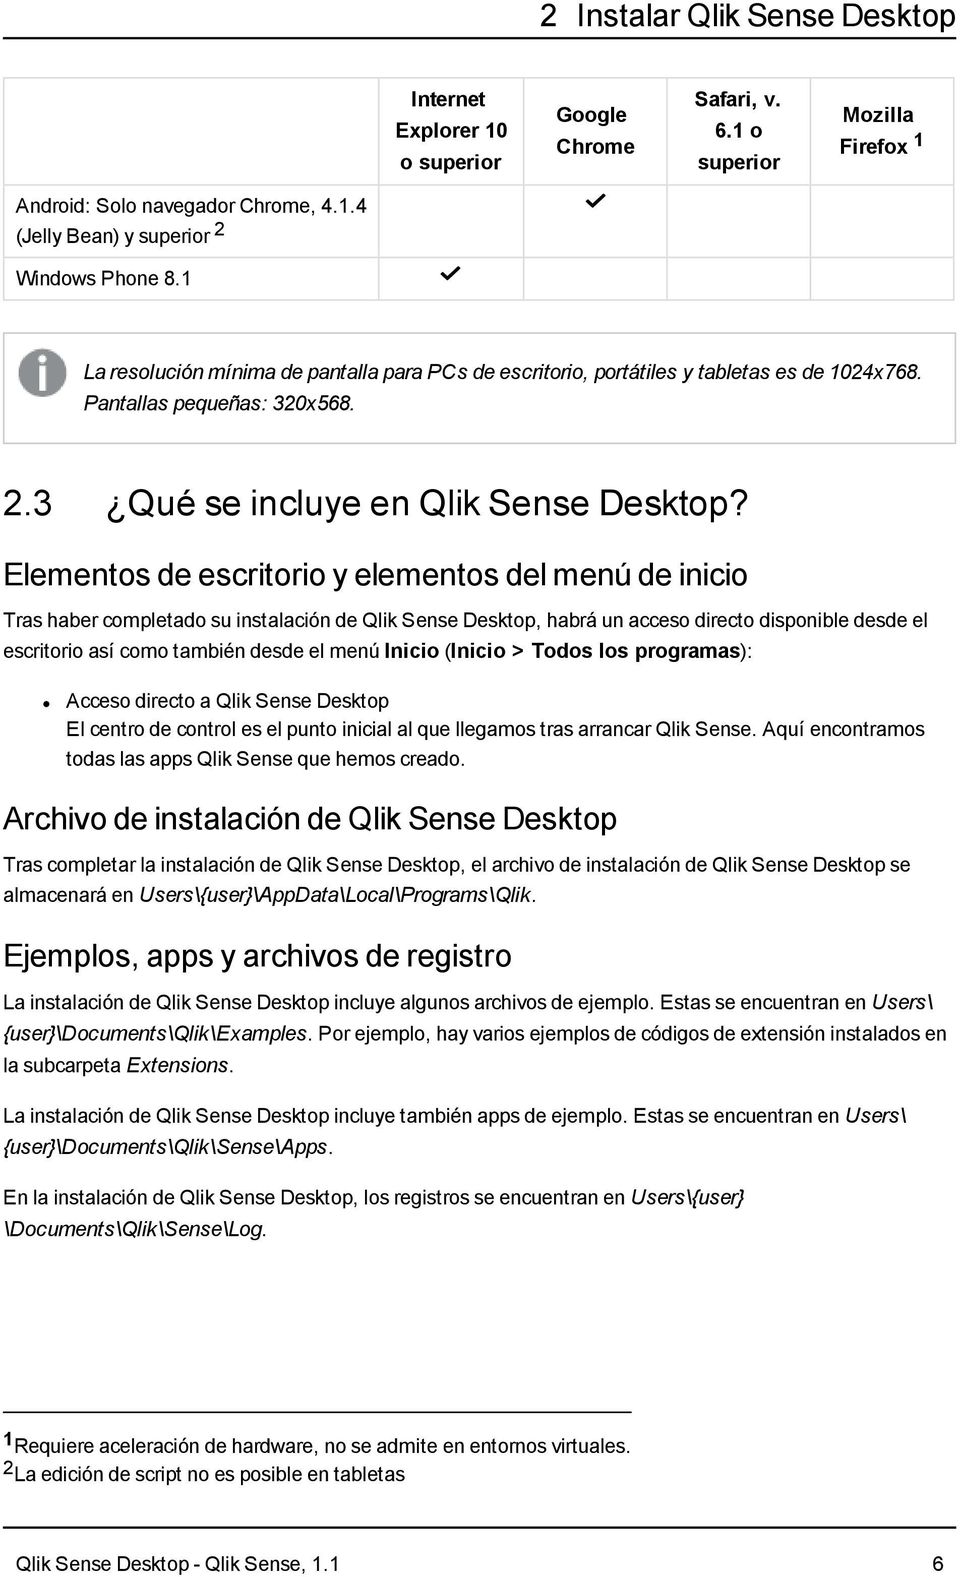 Elementos de escritorio y elementos del menú de inicio Tras haber completado su instalación de Qlik Sense Desktop, habrá un acceso directo disponible desde el escritorio así como también desde el